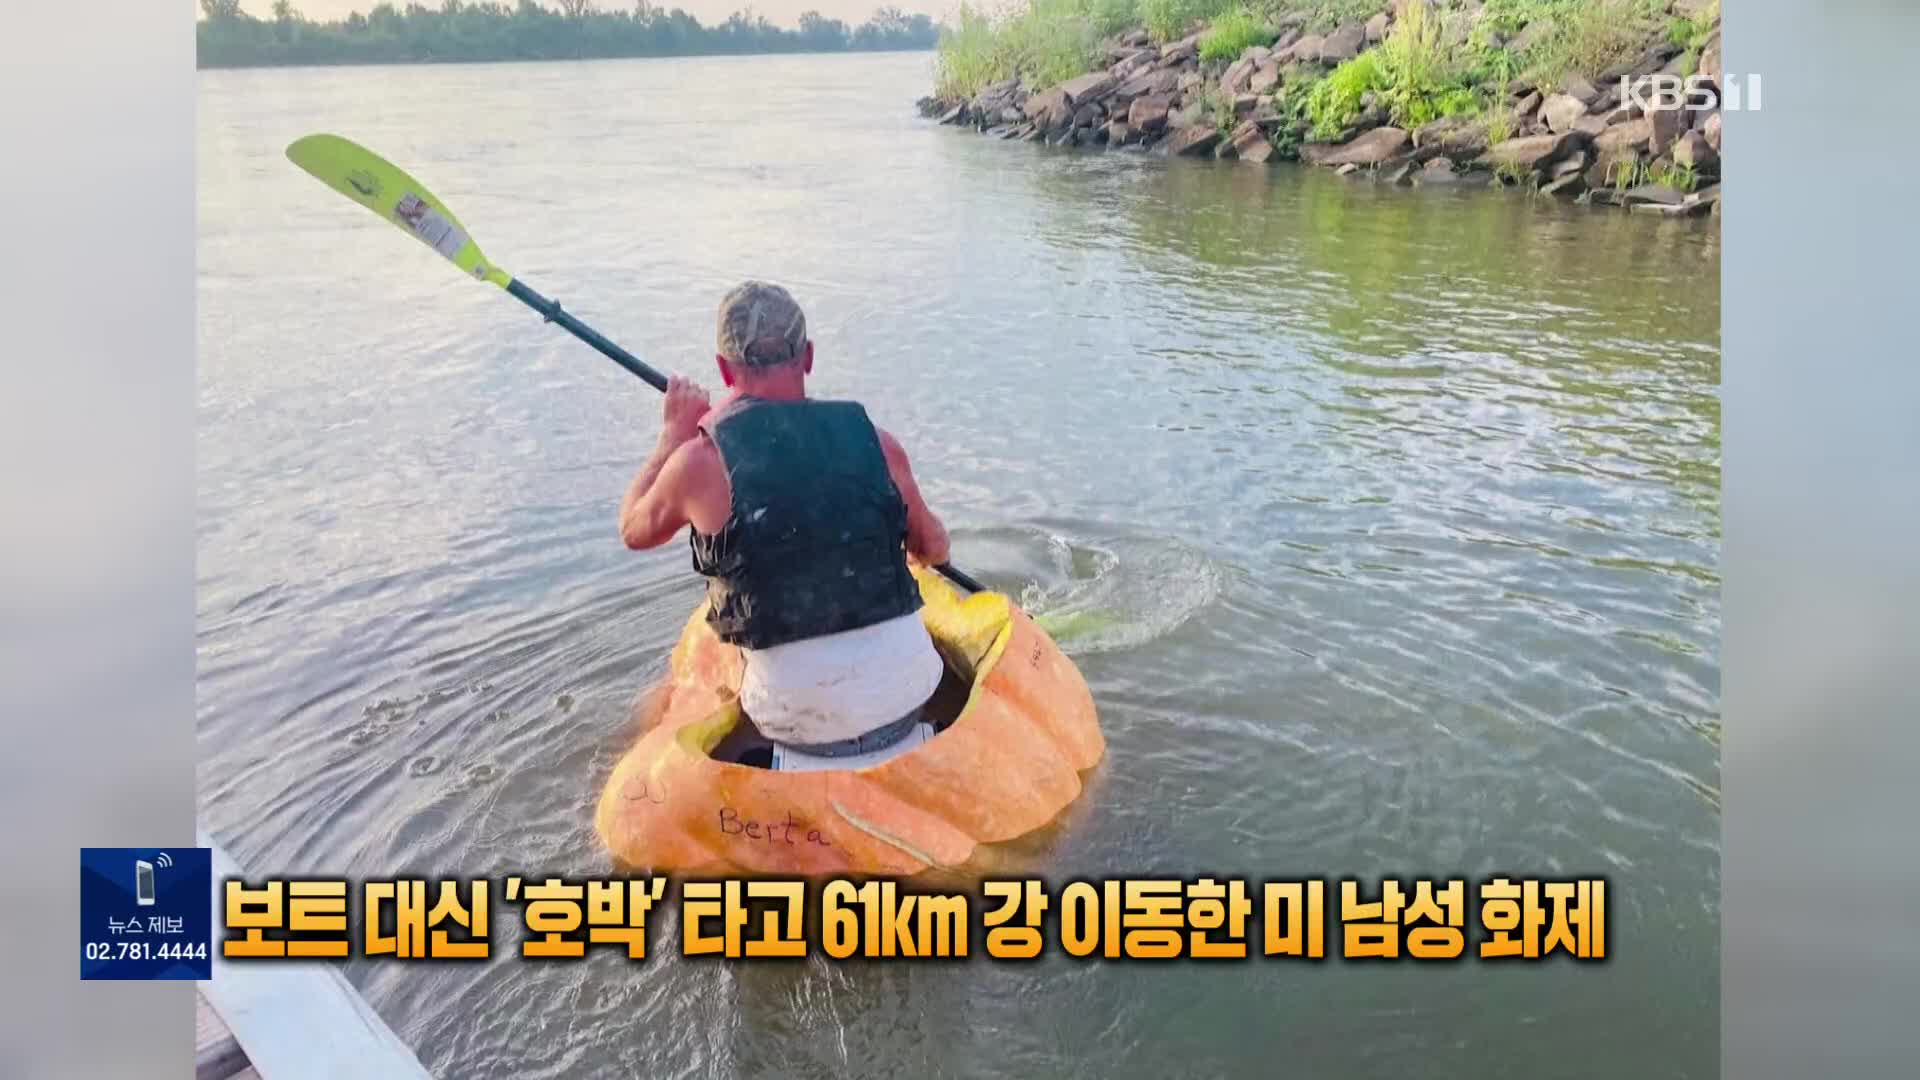 [톡톡 지구촌] 보트 대신 ‘호박’ 타고 61km 강 이동한 미 남성 화제